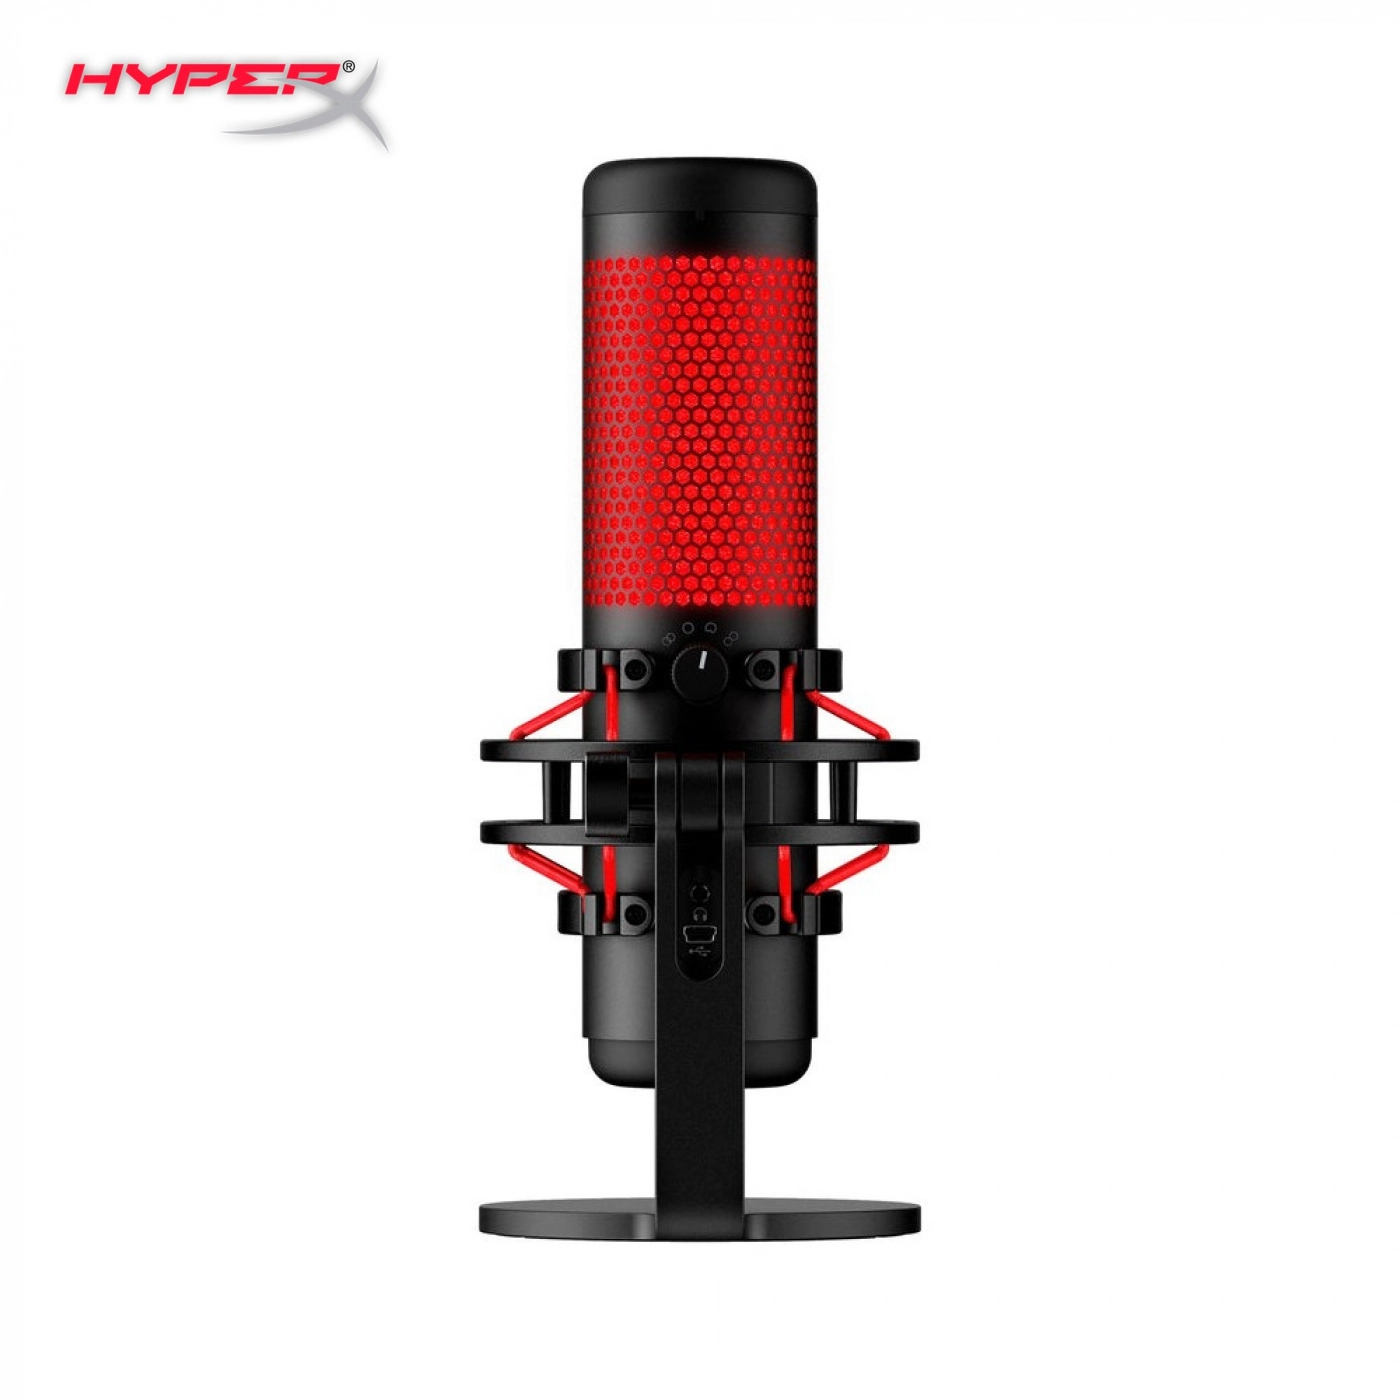 Купить Микрофон HyperX Quadcast - фото 3